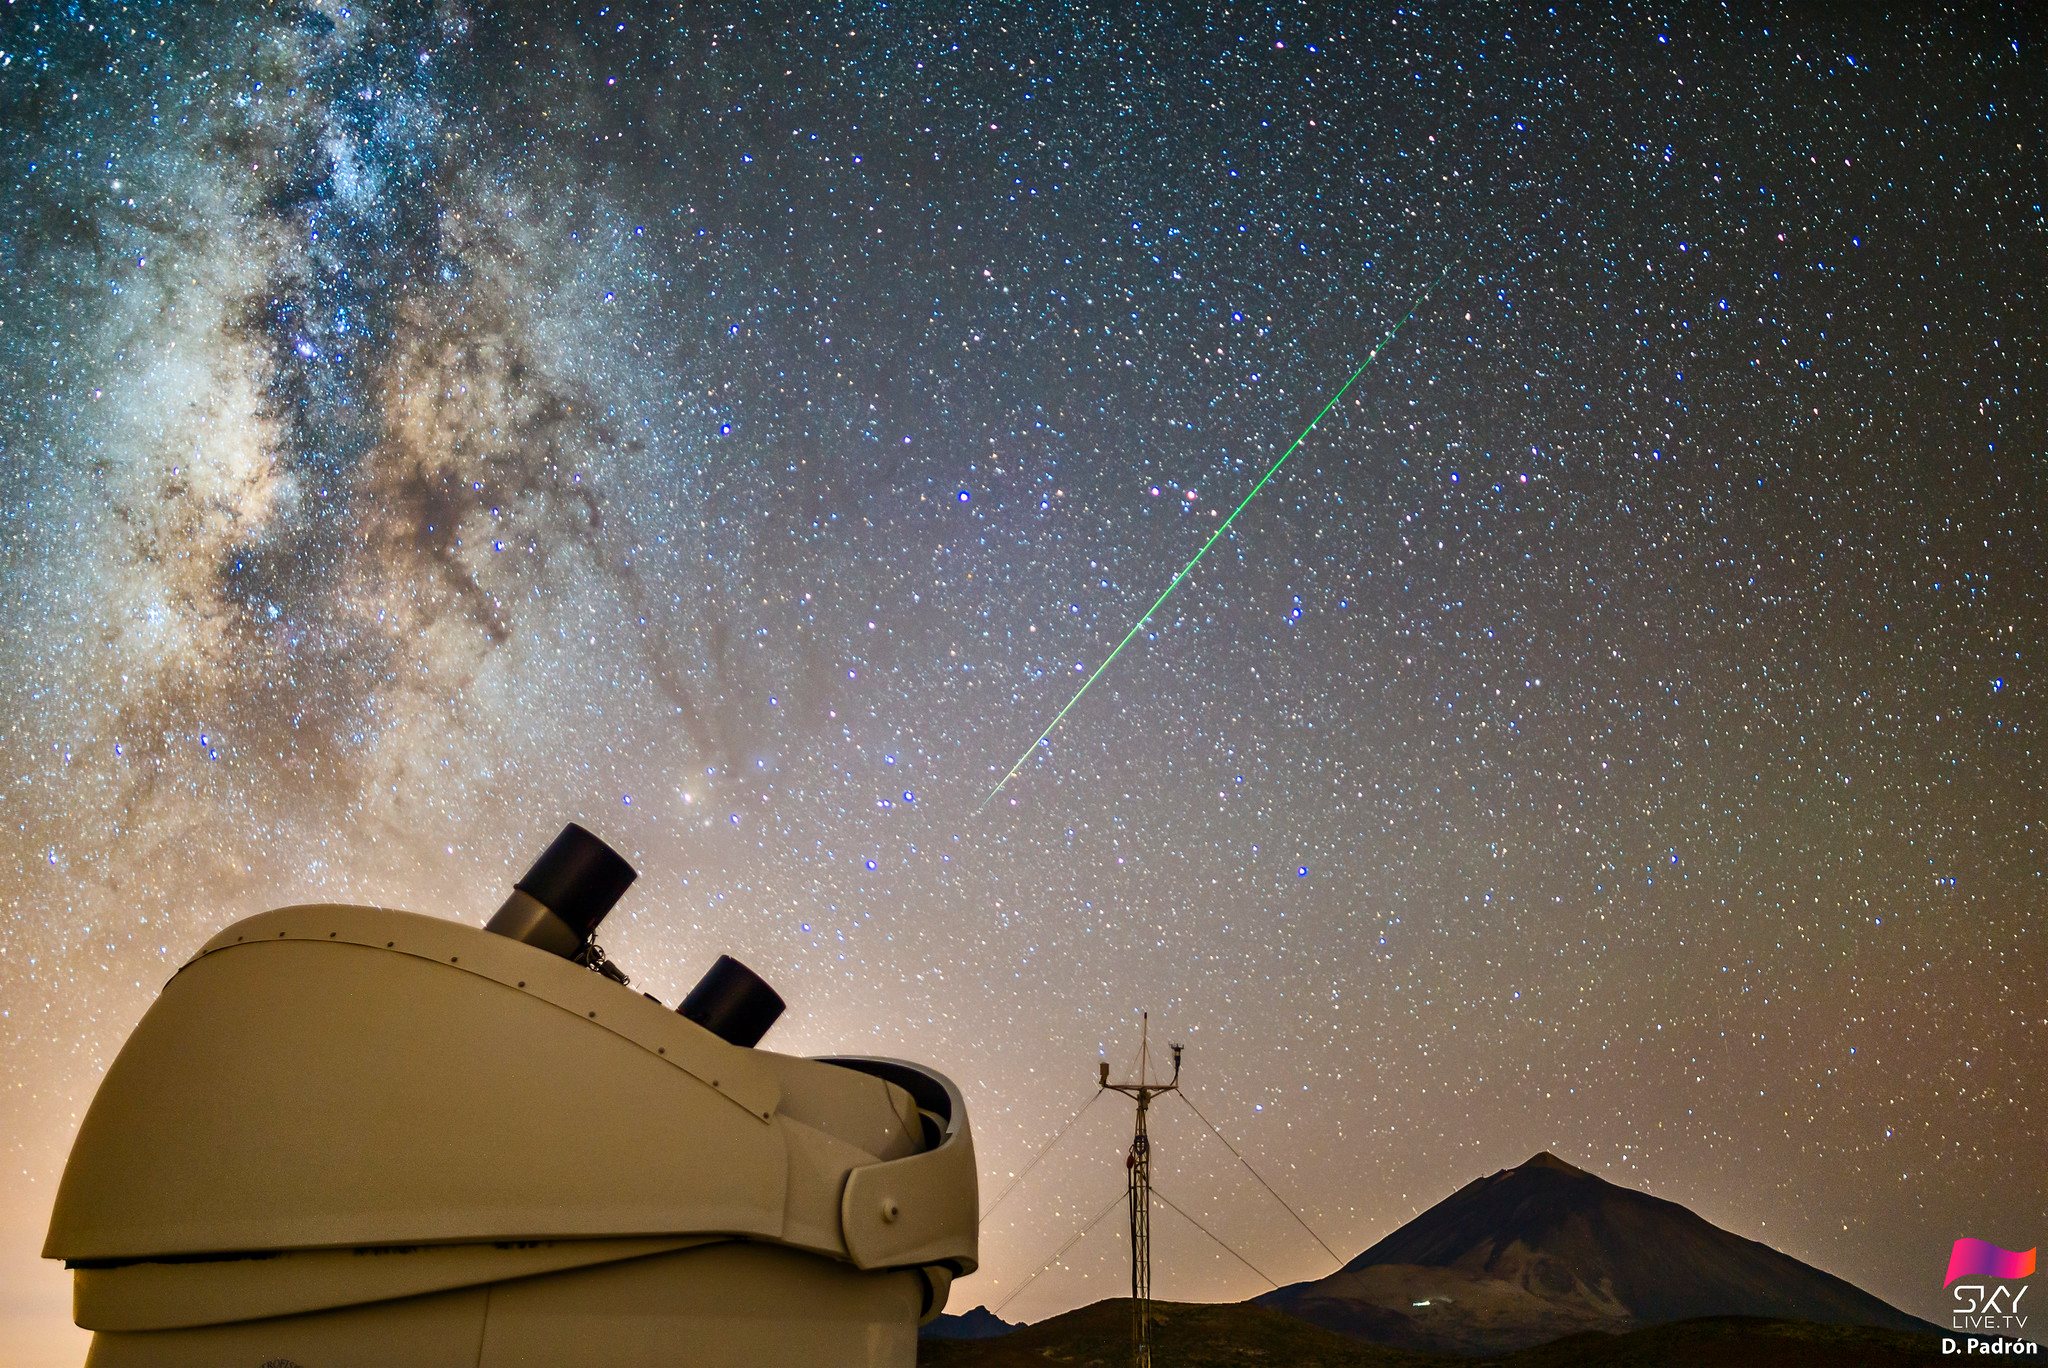 Una perseida cruza el cielo sobre el volcán Teide, la noche del 11 al 12 de agosto de 2020, bajo la atenta mirada del telescopio MASTER. En la imagen, tomada desde el Observatorio del Teide (Instituto de Astrofísica de Canarias), también se puede ver el centro galáctico. Autor: D. Padrón.